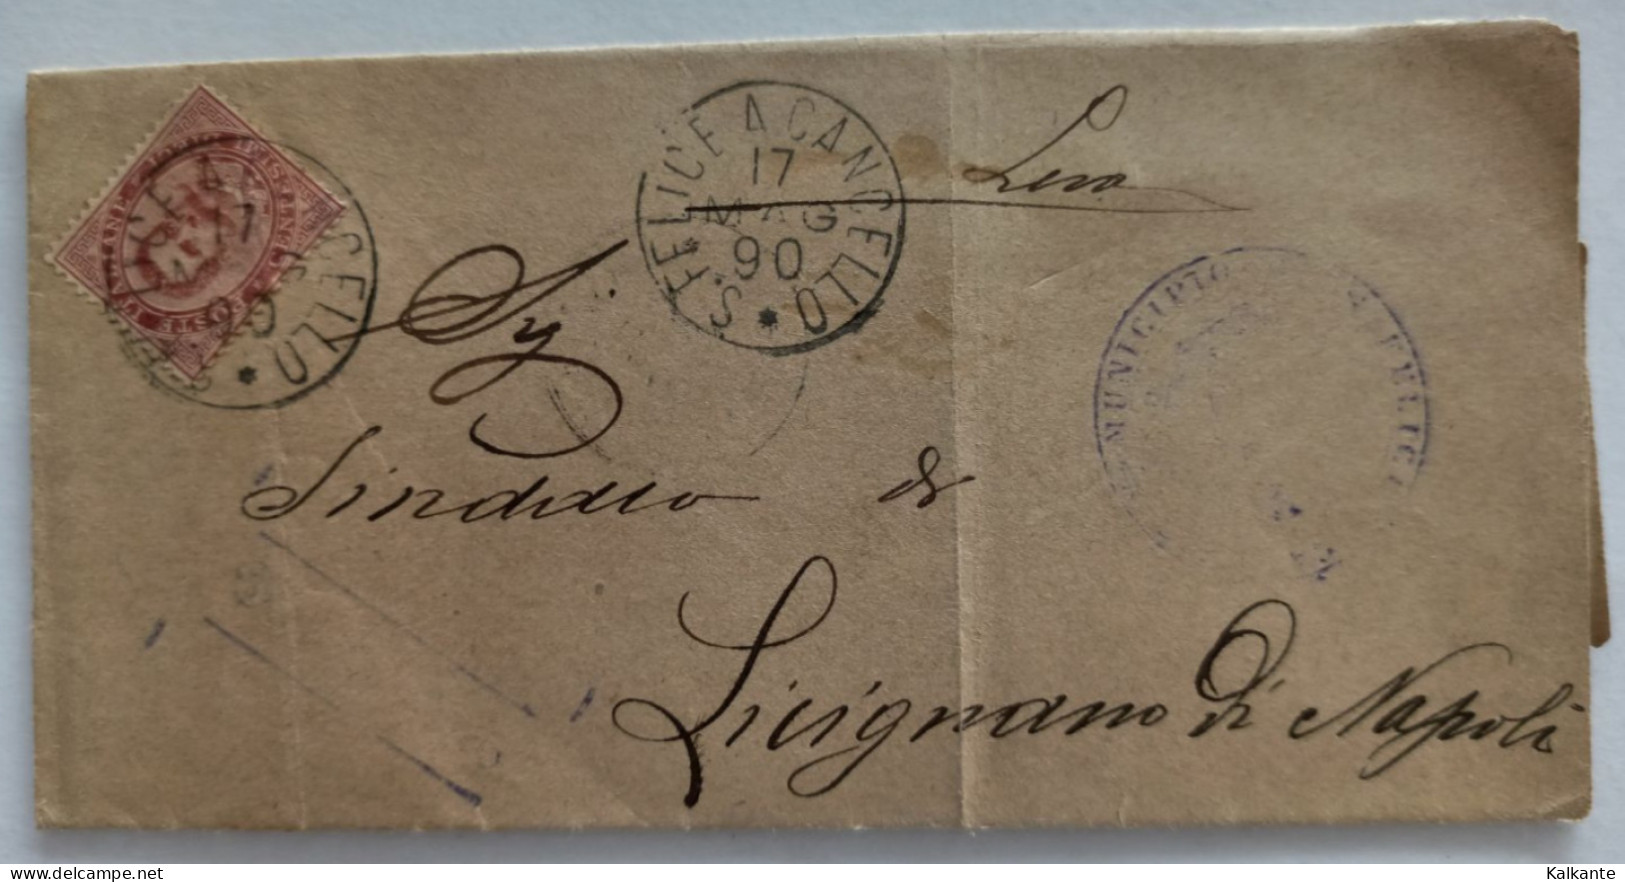 1890 - Documento Del Municipio Di S.Felice Al Cancello (SA) Riguardo La Leva Del 1870 - Poststempel